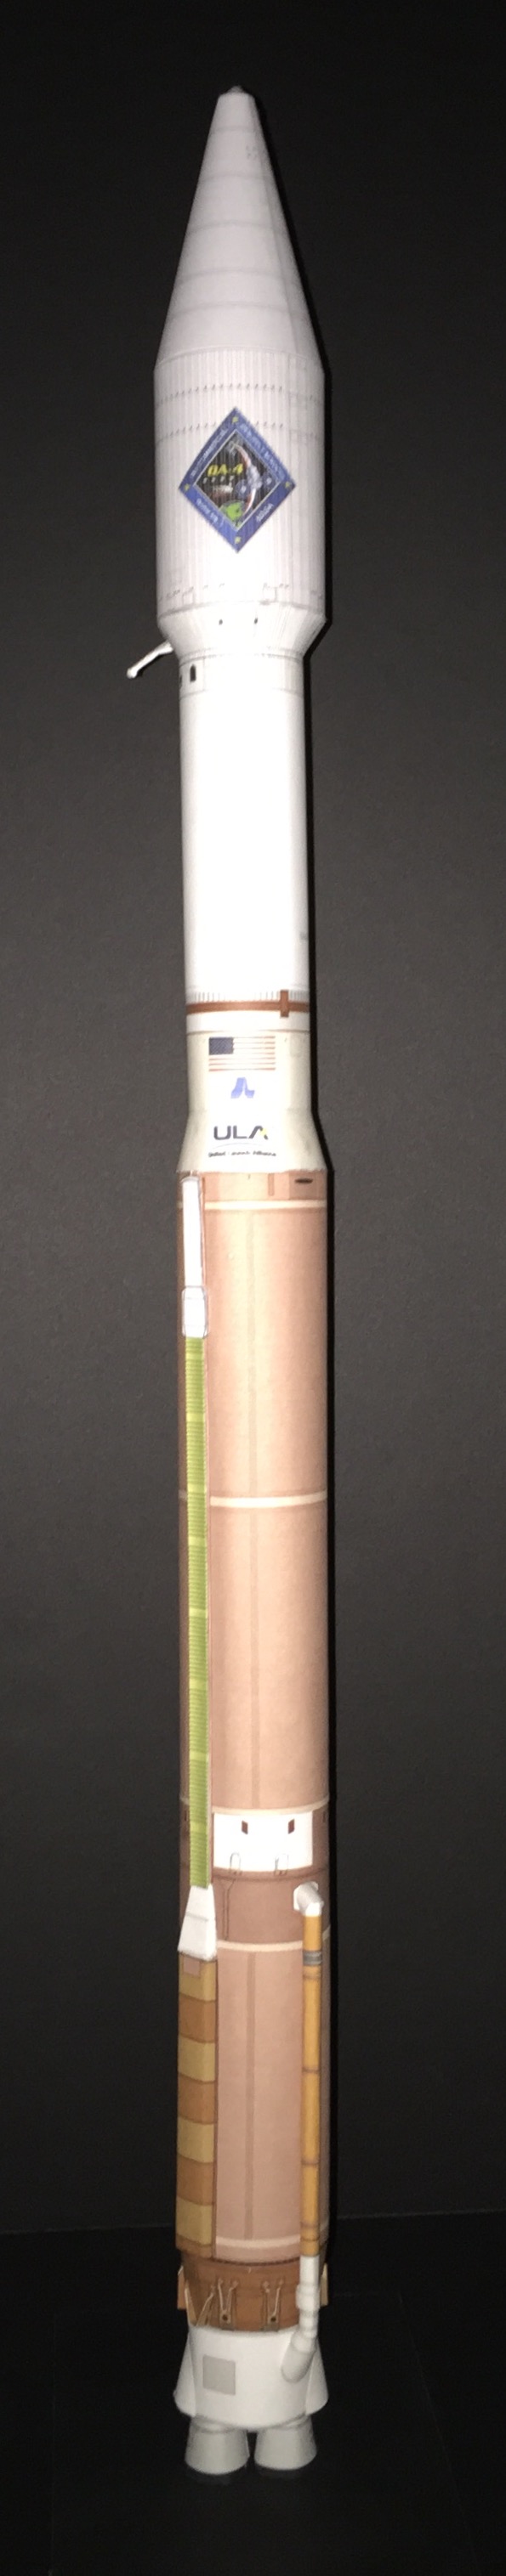 Atlas V OA-4-image